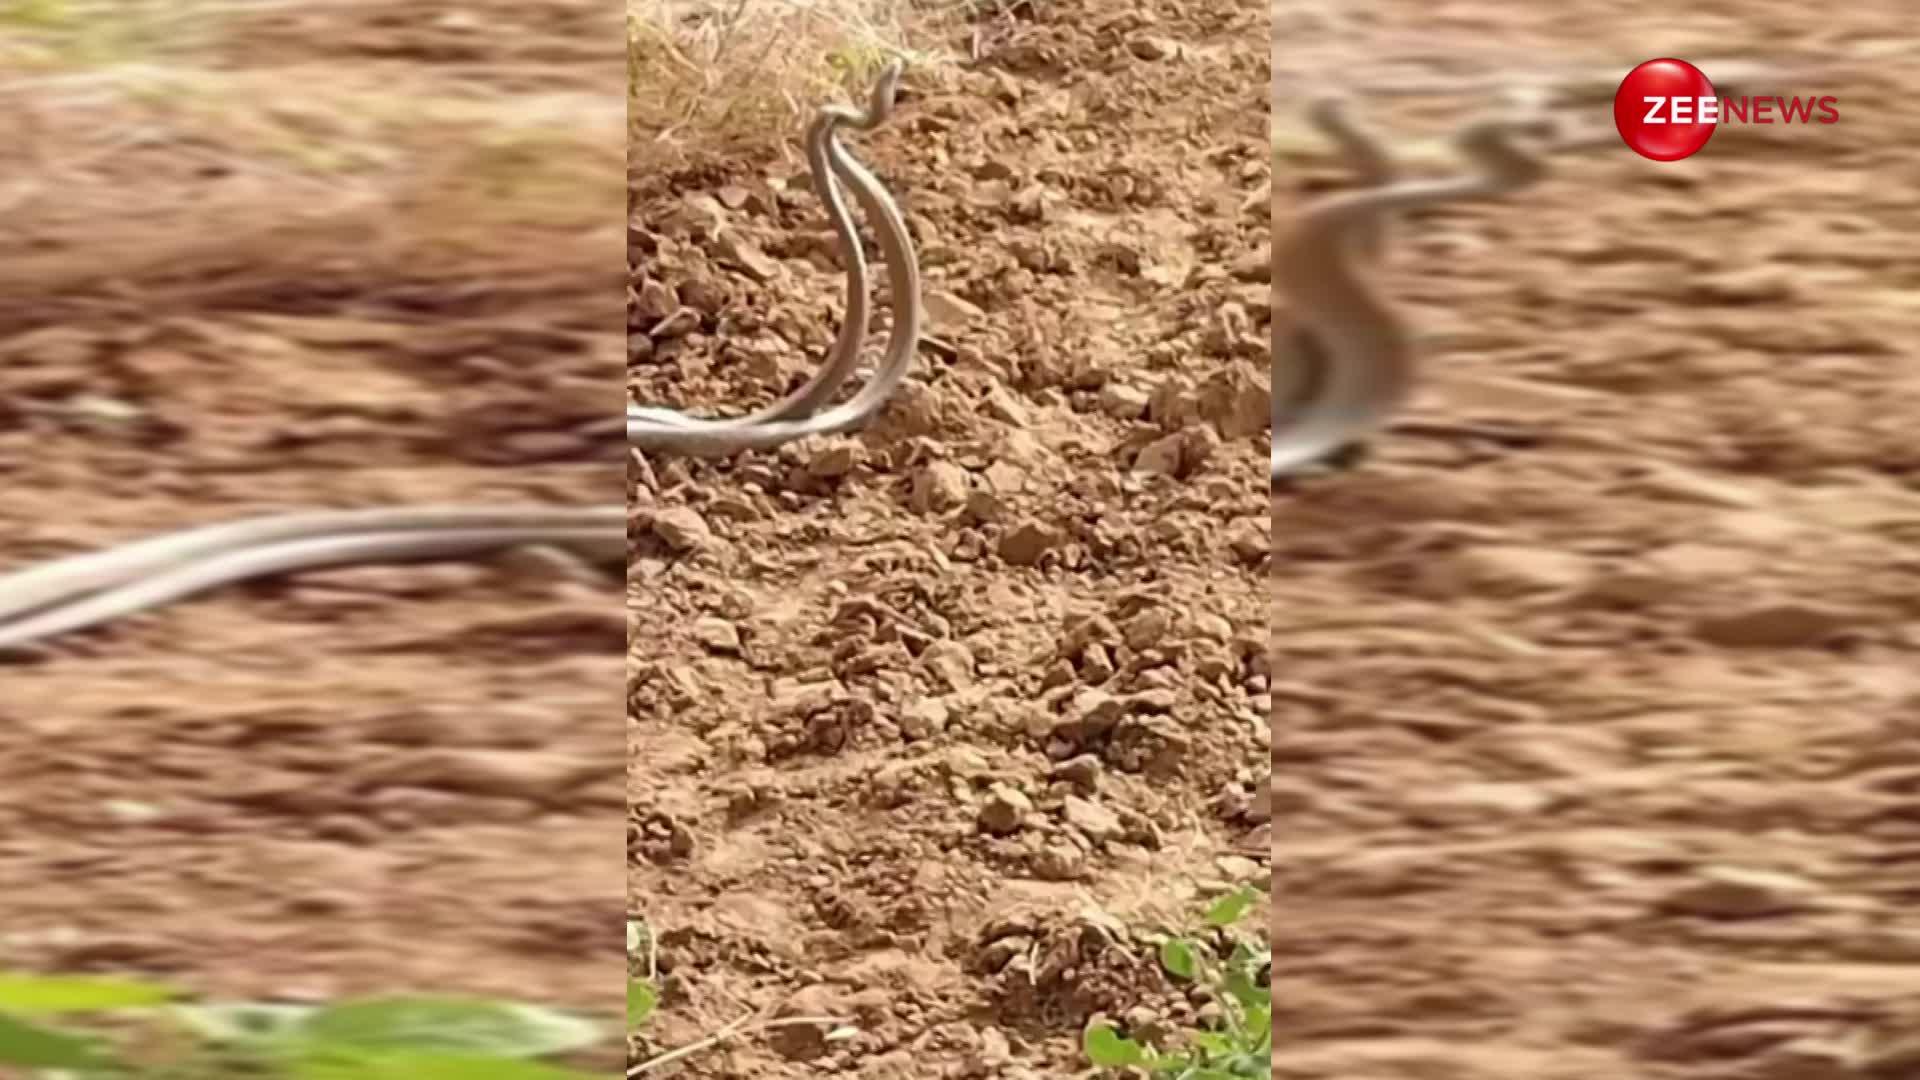 किसान के खेत से जाते ही एक दूसरे से चिपक-चिपककर रोमांस करने लगे नाग-नागिन, सोशल मीडिया पर खूब देख जा रहा है ये वीडियो